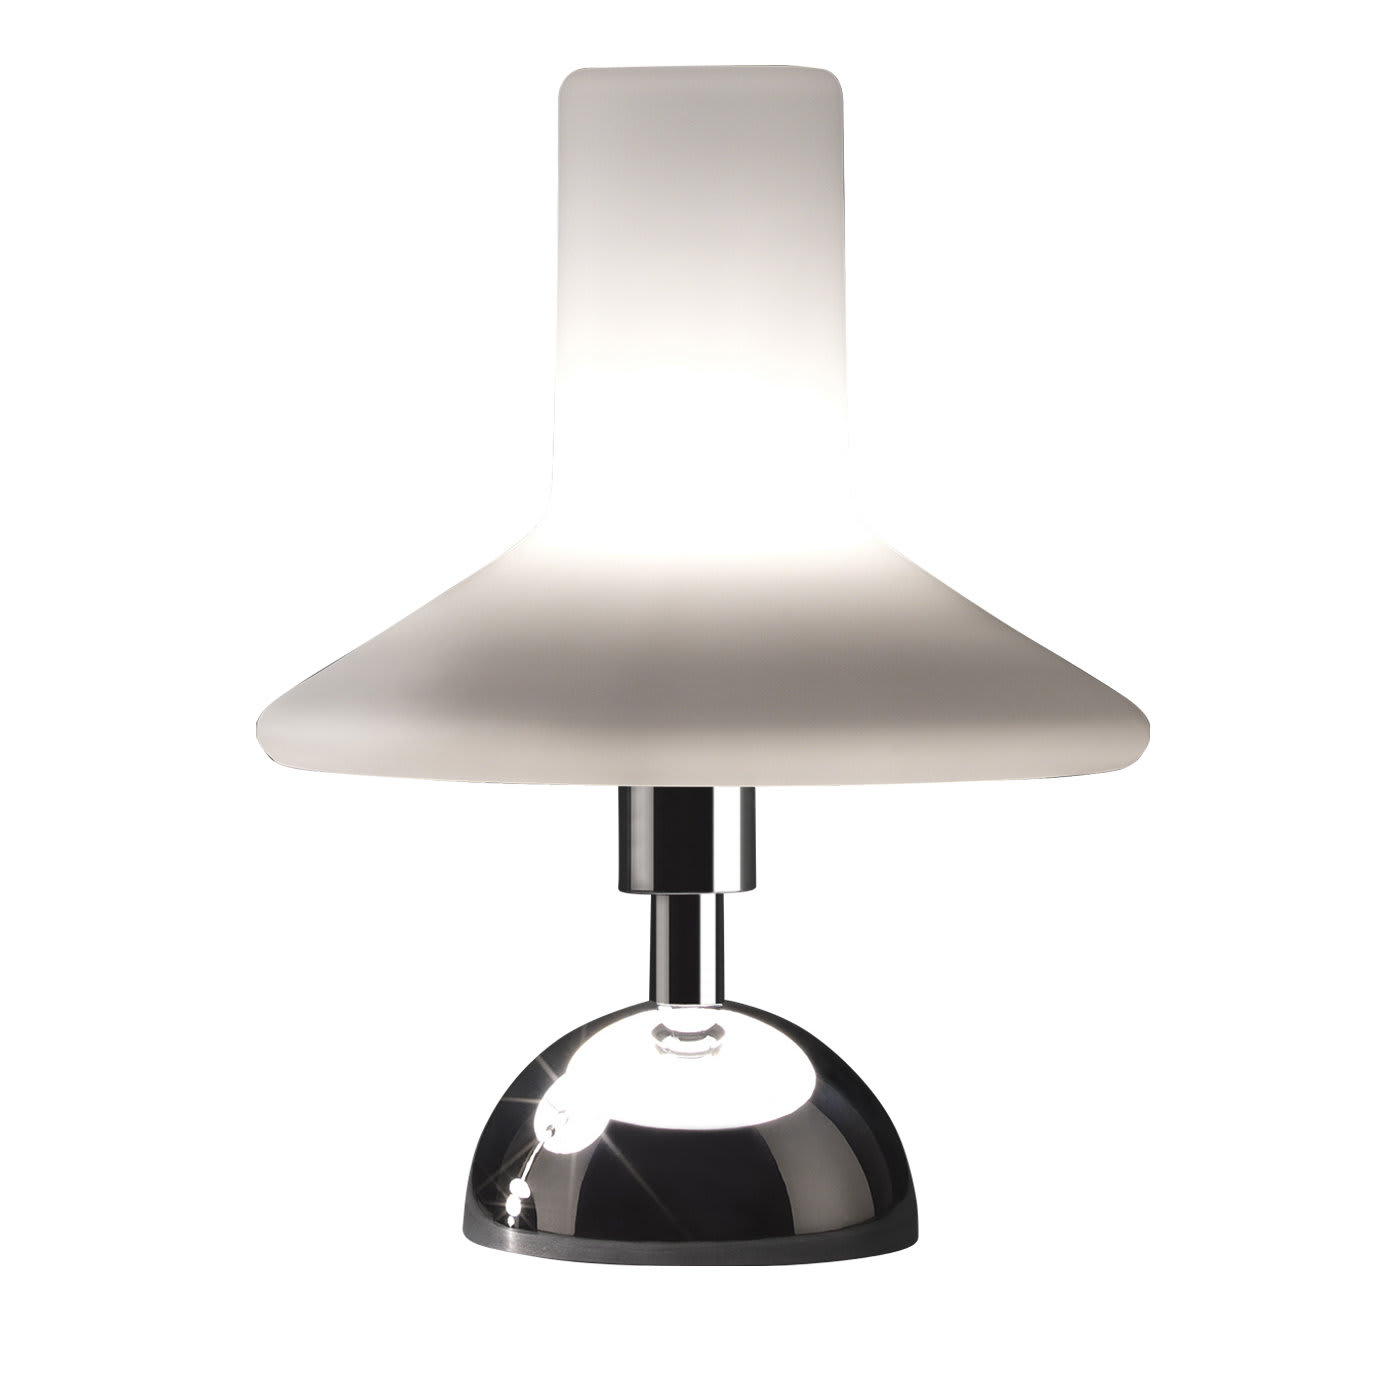 Olly Small Table Lamp - Tato